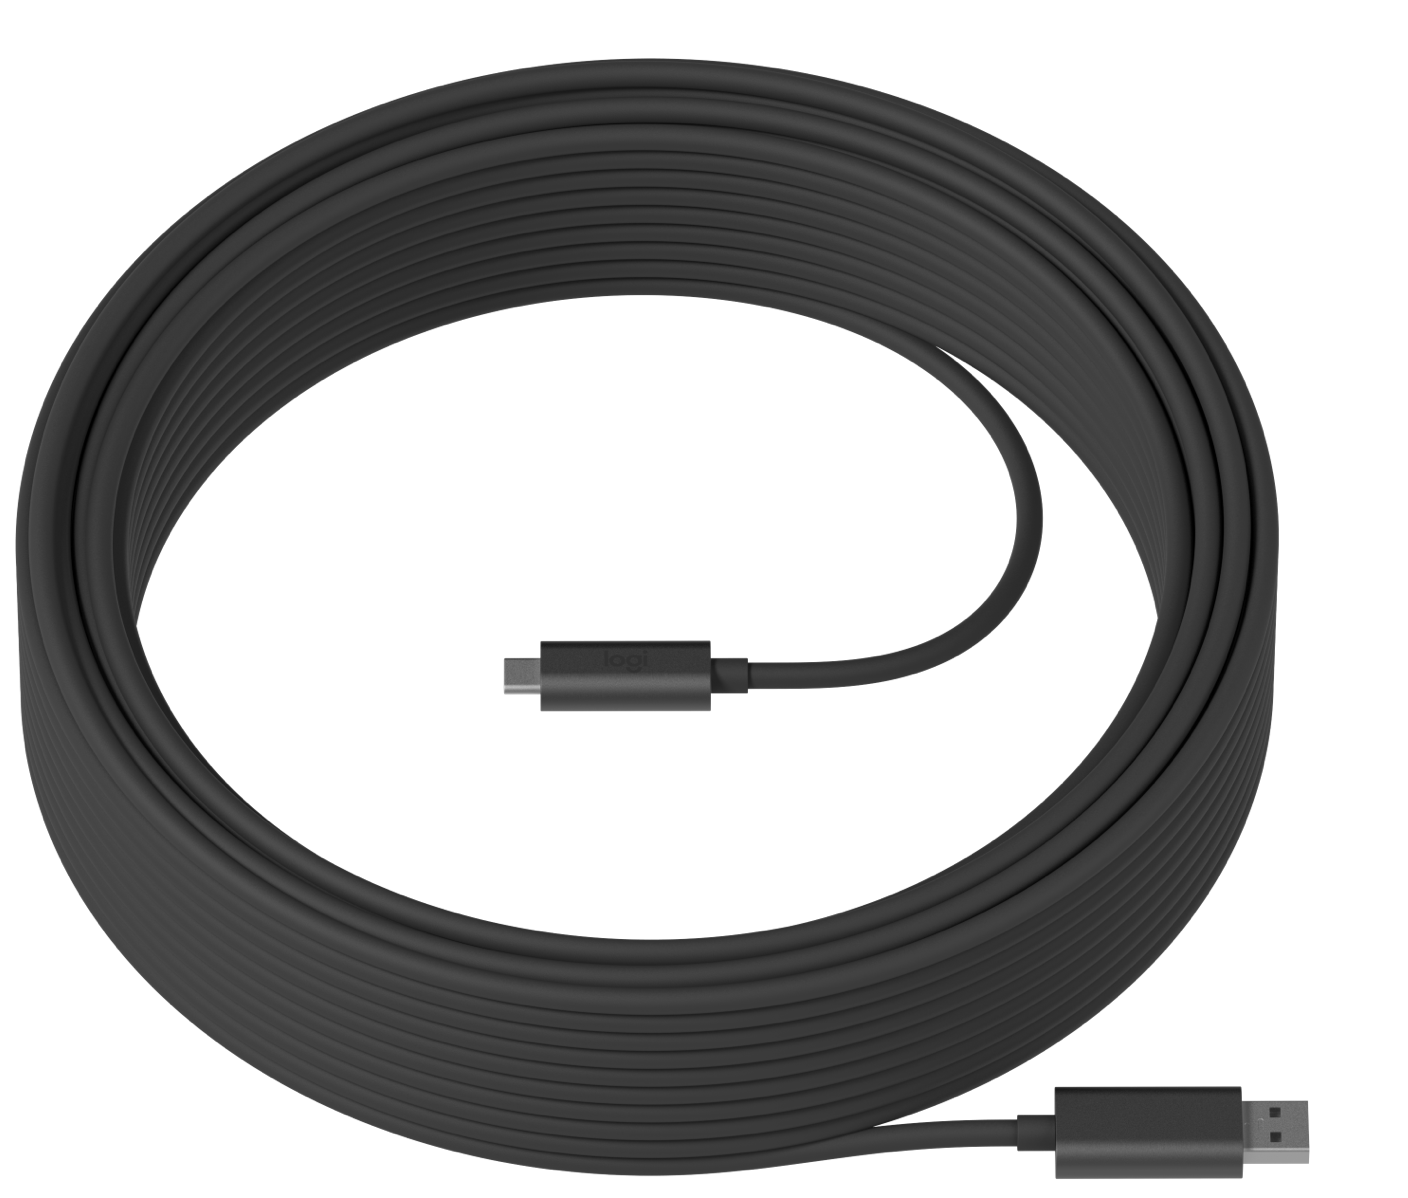 Cable USB-A a USB-C - Logitech Strong USB / 939-001799 | 2109 - Cable USB-A a USB-C, Longitud: 10 m, Velocidad: 10 Gbps, Fuerza de tracción: 200 newtons, Carga máxima: 1.000 kg, Radio de curvatura: 25 mm, Diámetro de conducto: 19 mm